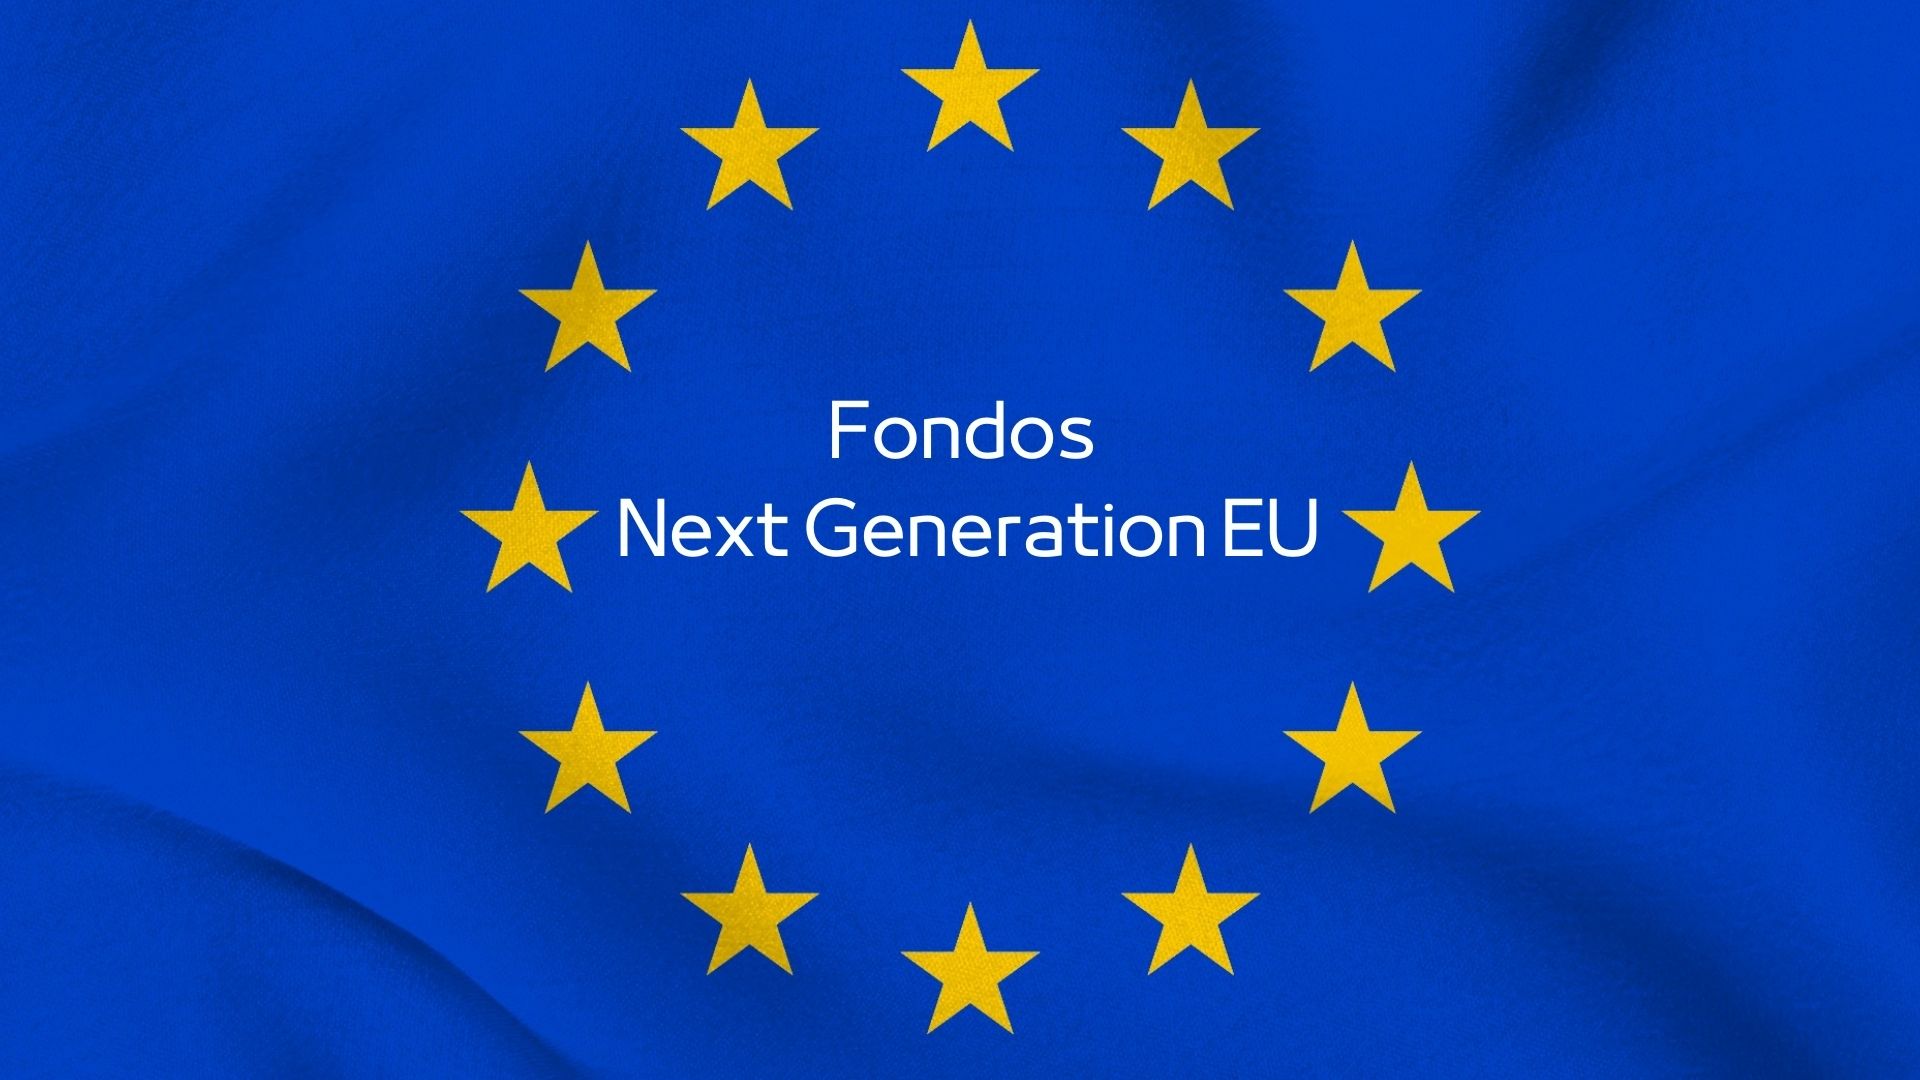 Fondos Europeos Next Generation